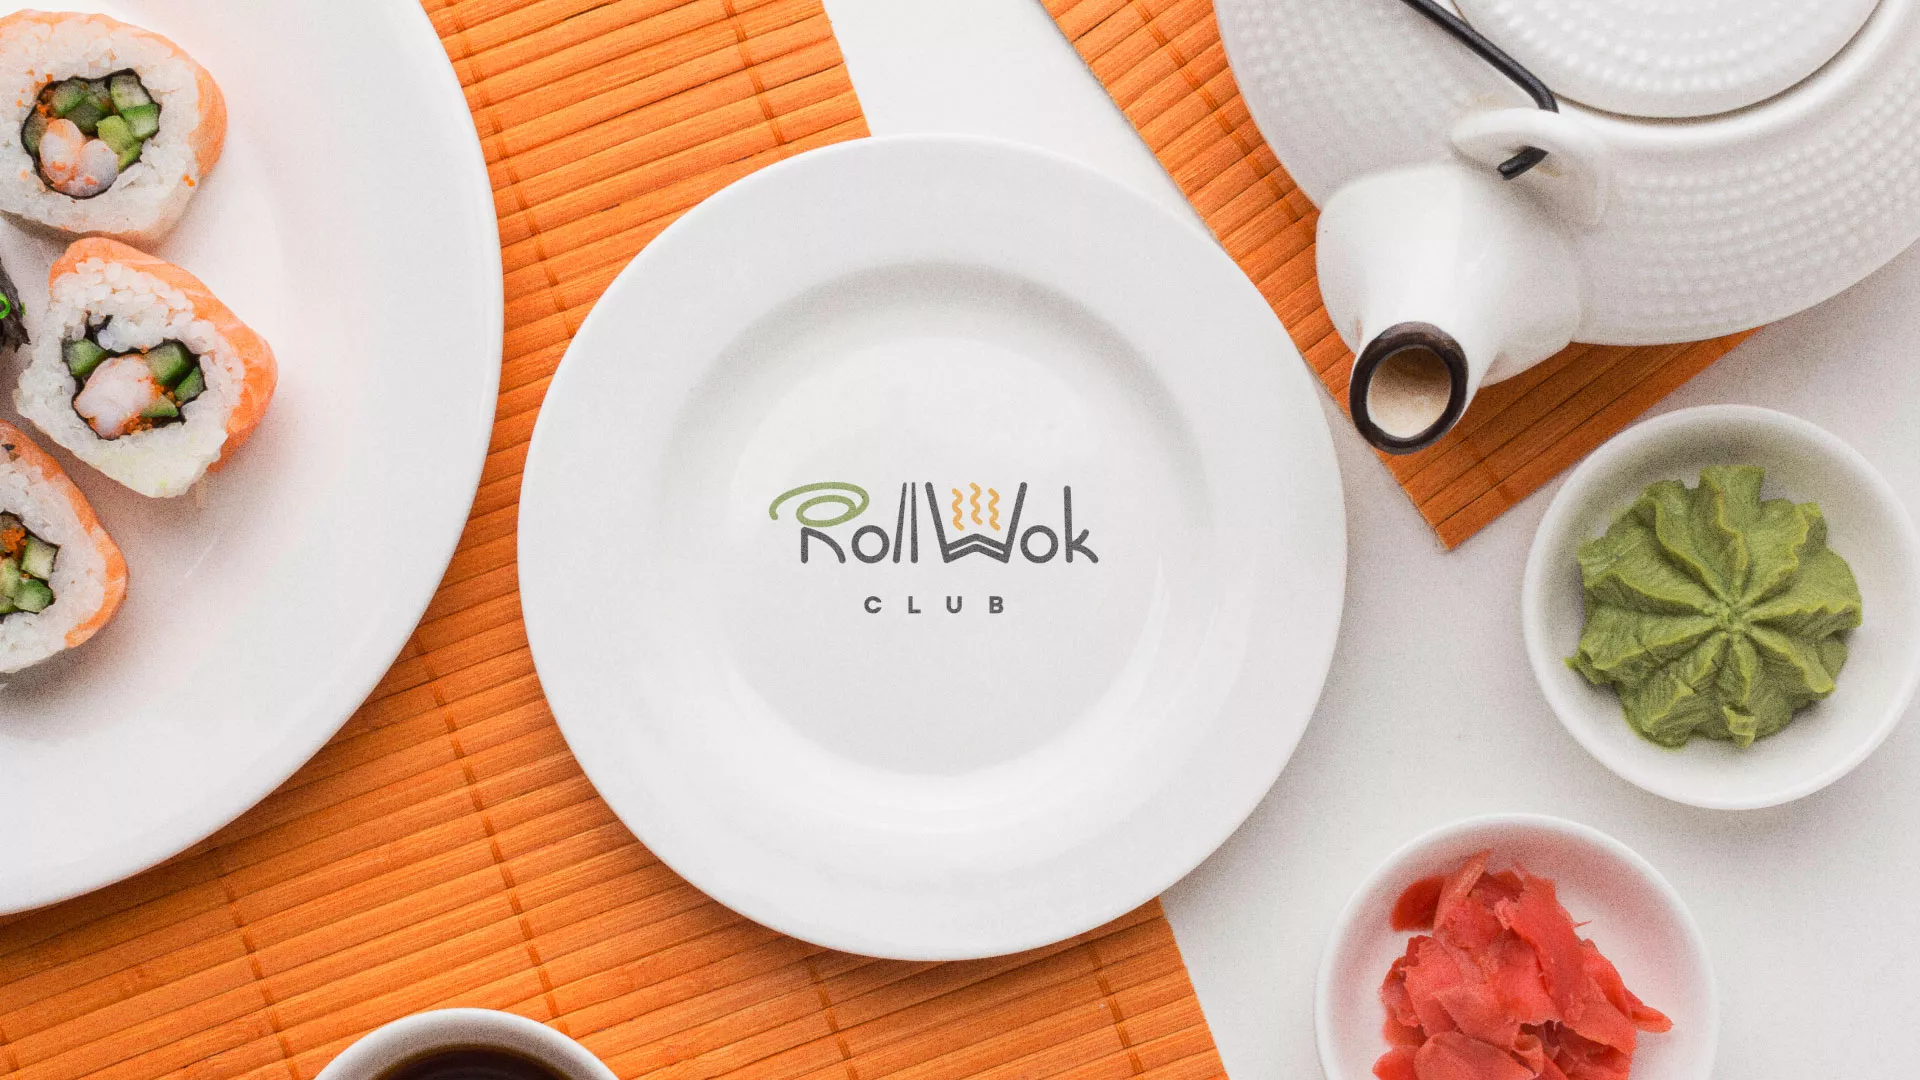 Разработка логотипа и фирменного стиля суши-бара «Roll Wok Club» в Москве